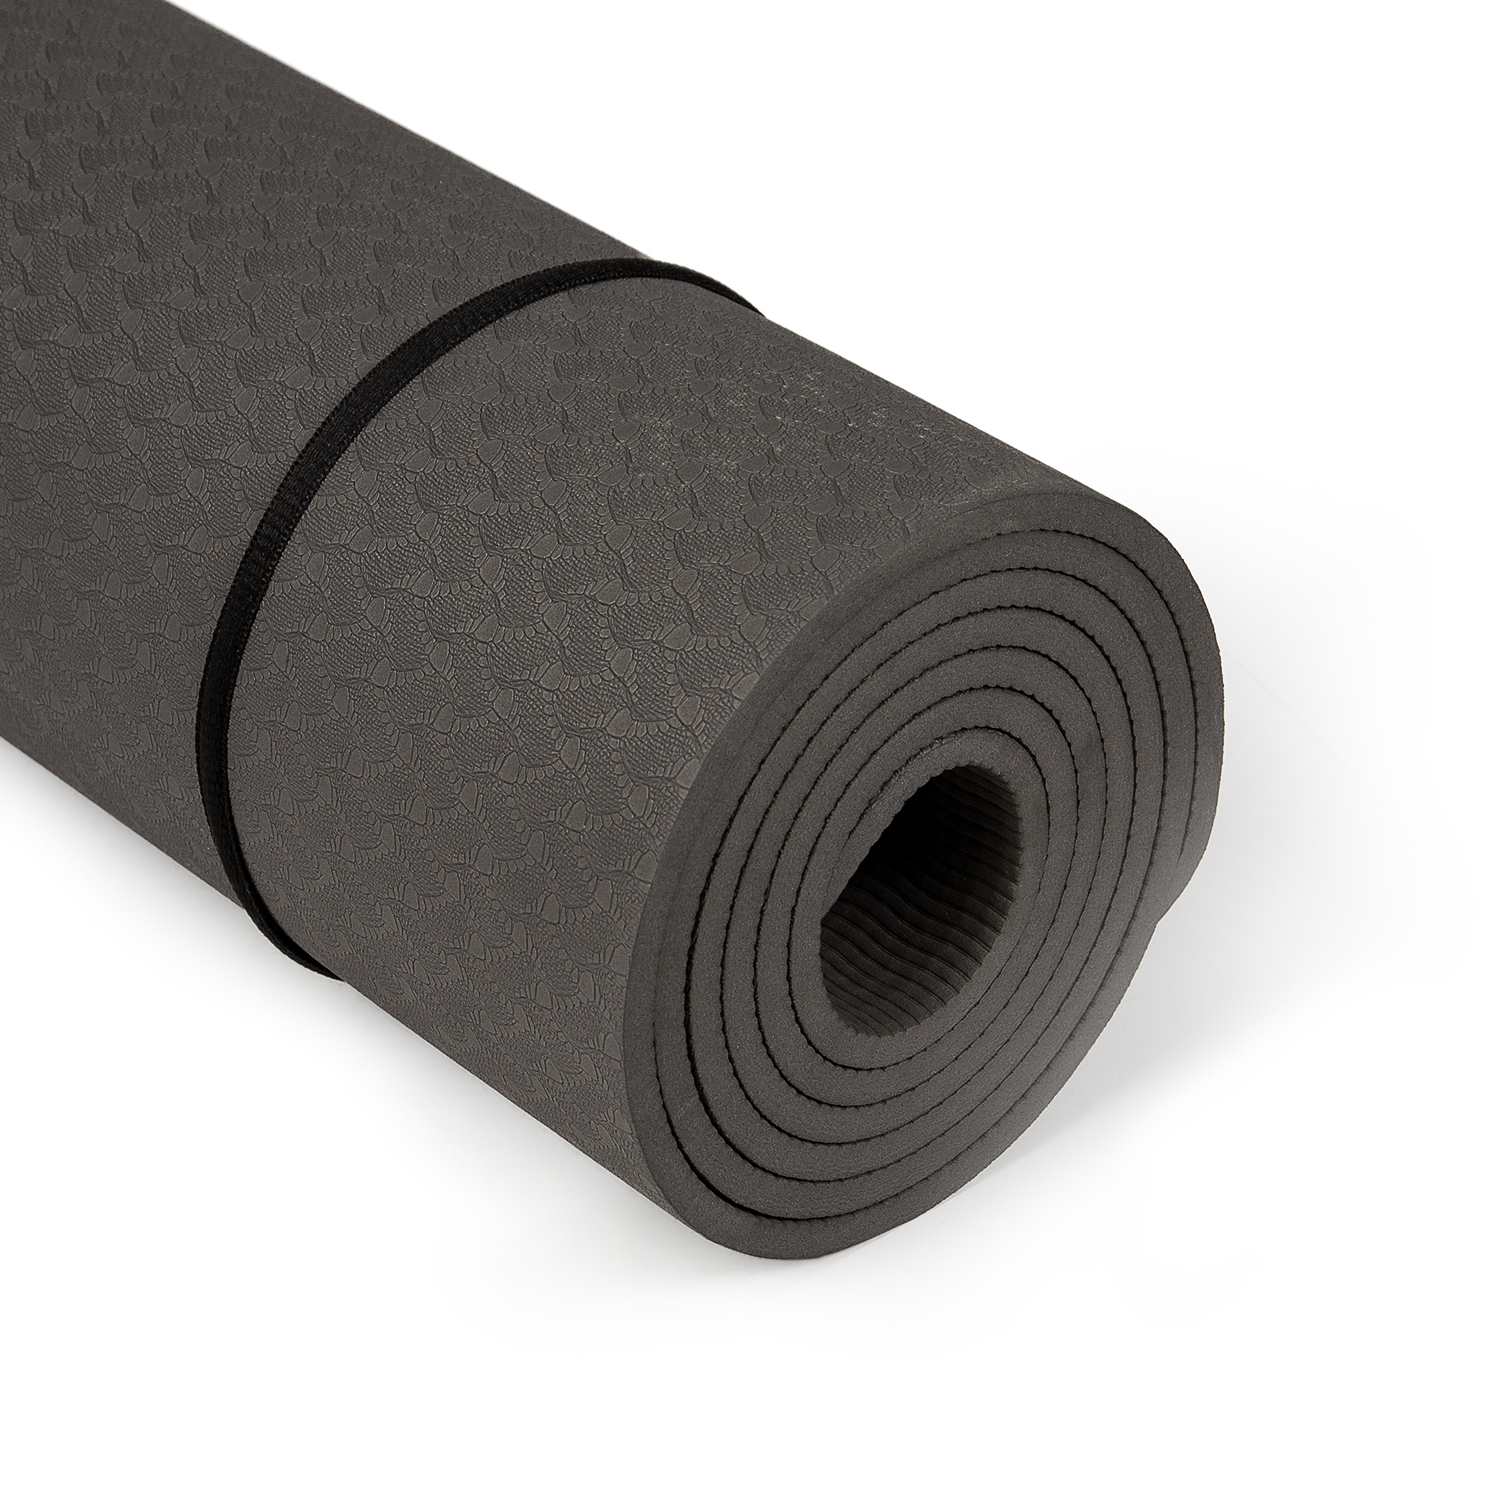 Keer terug Ochtend gymnastiek omroeper Yogamat zwart 1830x610x6mm | Rubbermagazijn